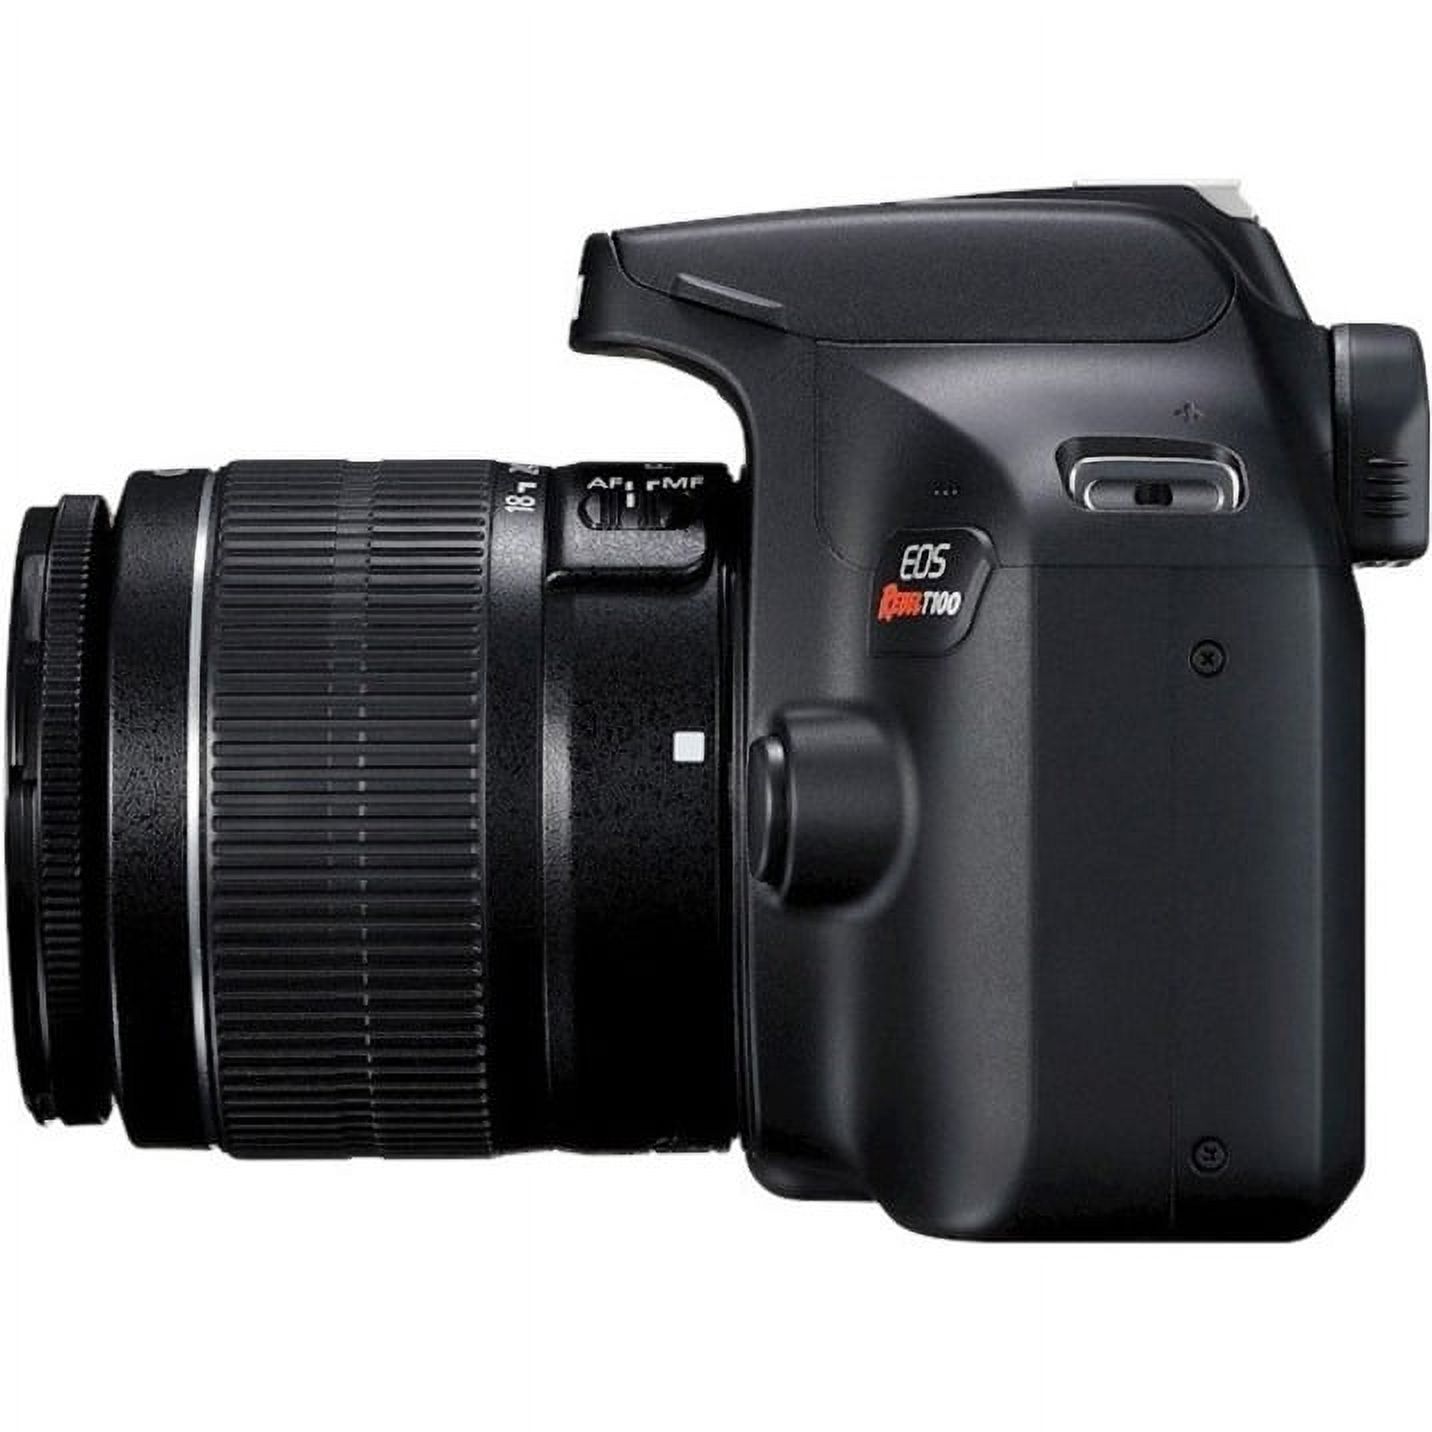 Canon EOS Rebel T100 18 Megapixel Digital SLR Camera with Lens, 0.71", 2.17", Black - image 3 of 10